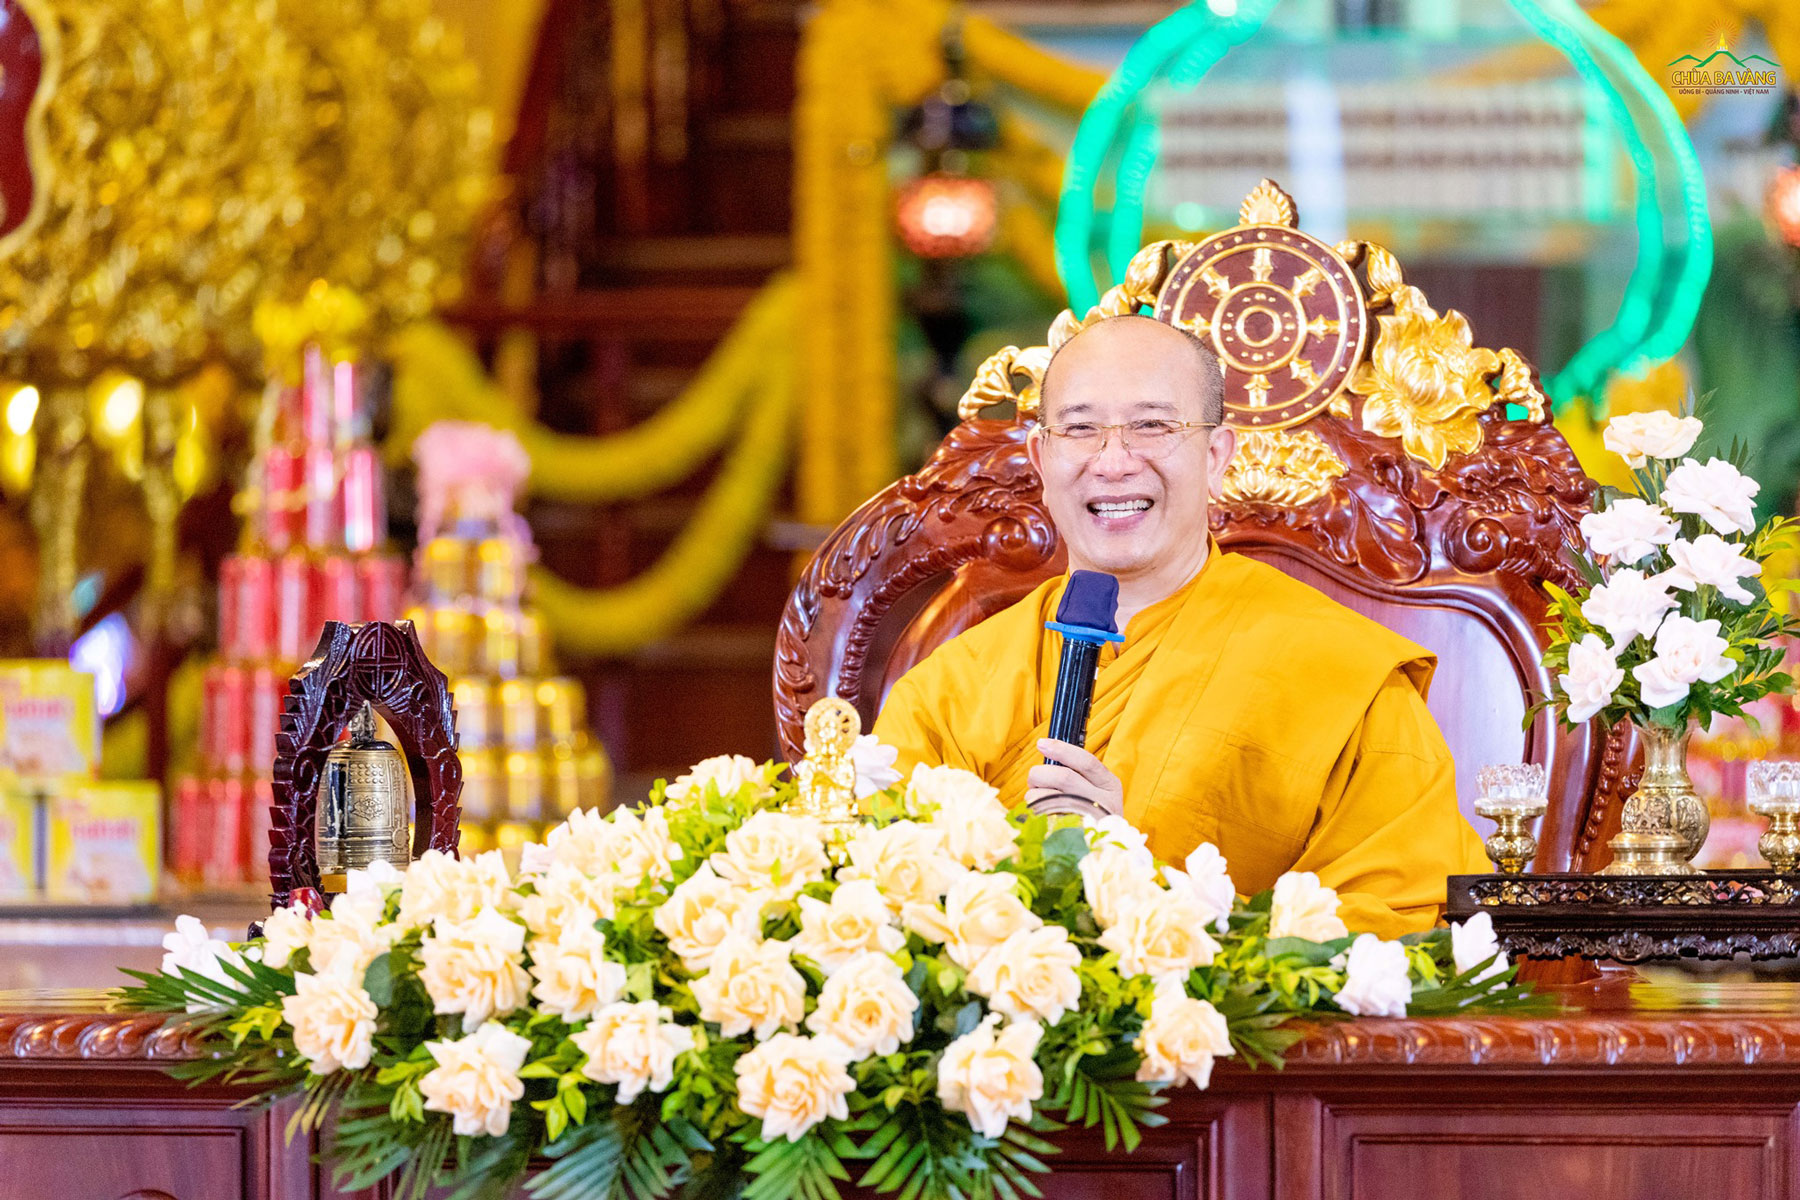 Ngày 08/8/Tân Sửu vừa qua, thể theo lời thỉnh cầu của các Phật tử, Sư Phụ Thích Trúc Thái Minh đã quang lâm Chính Điện, truyền trao cho đại chúng thời Pháp: “Phước báu của tâm cung kính”